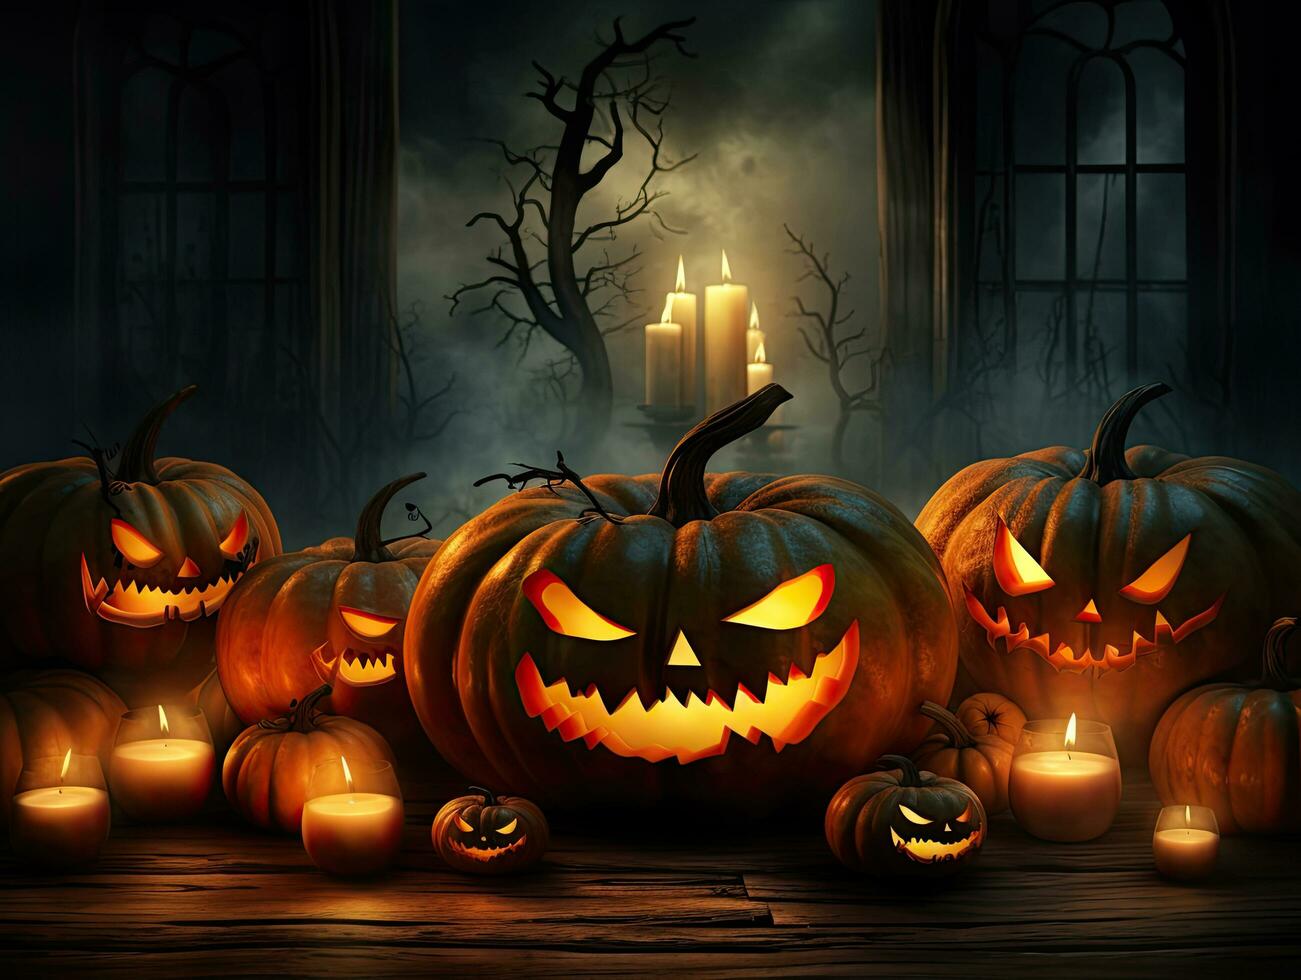 halloween achtergrond met spookachtig jack O lantaarns en kaarsen foto